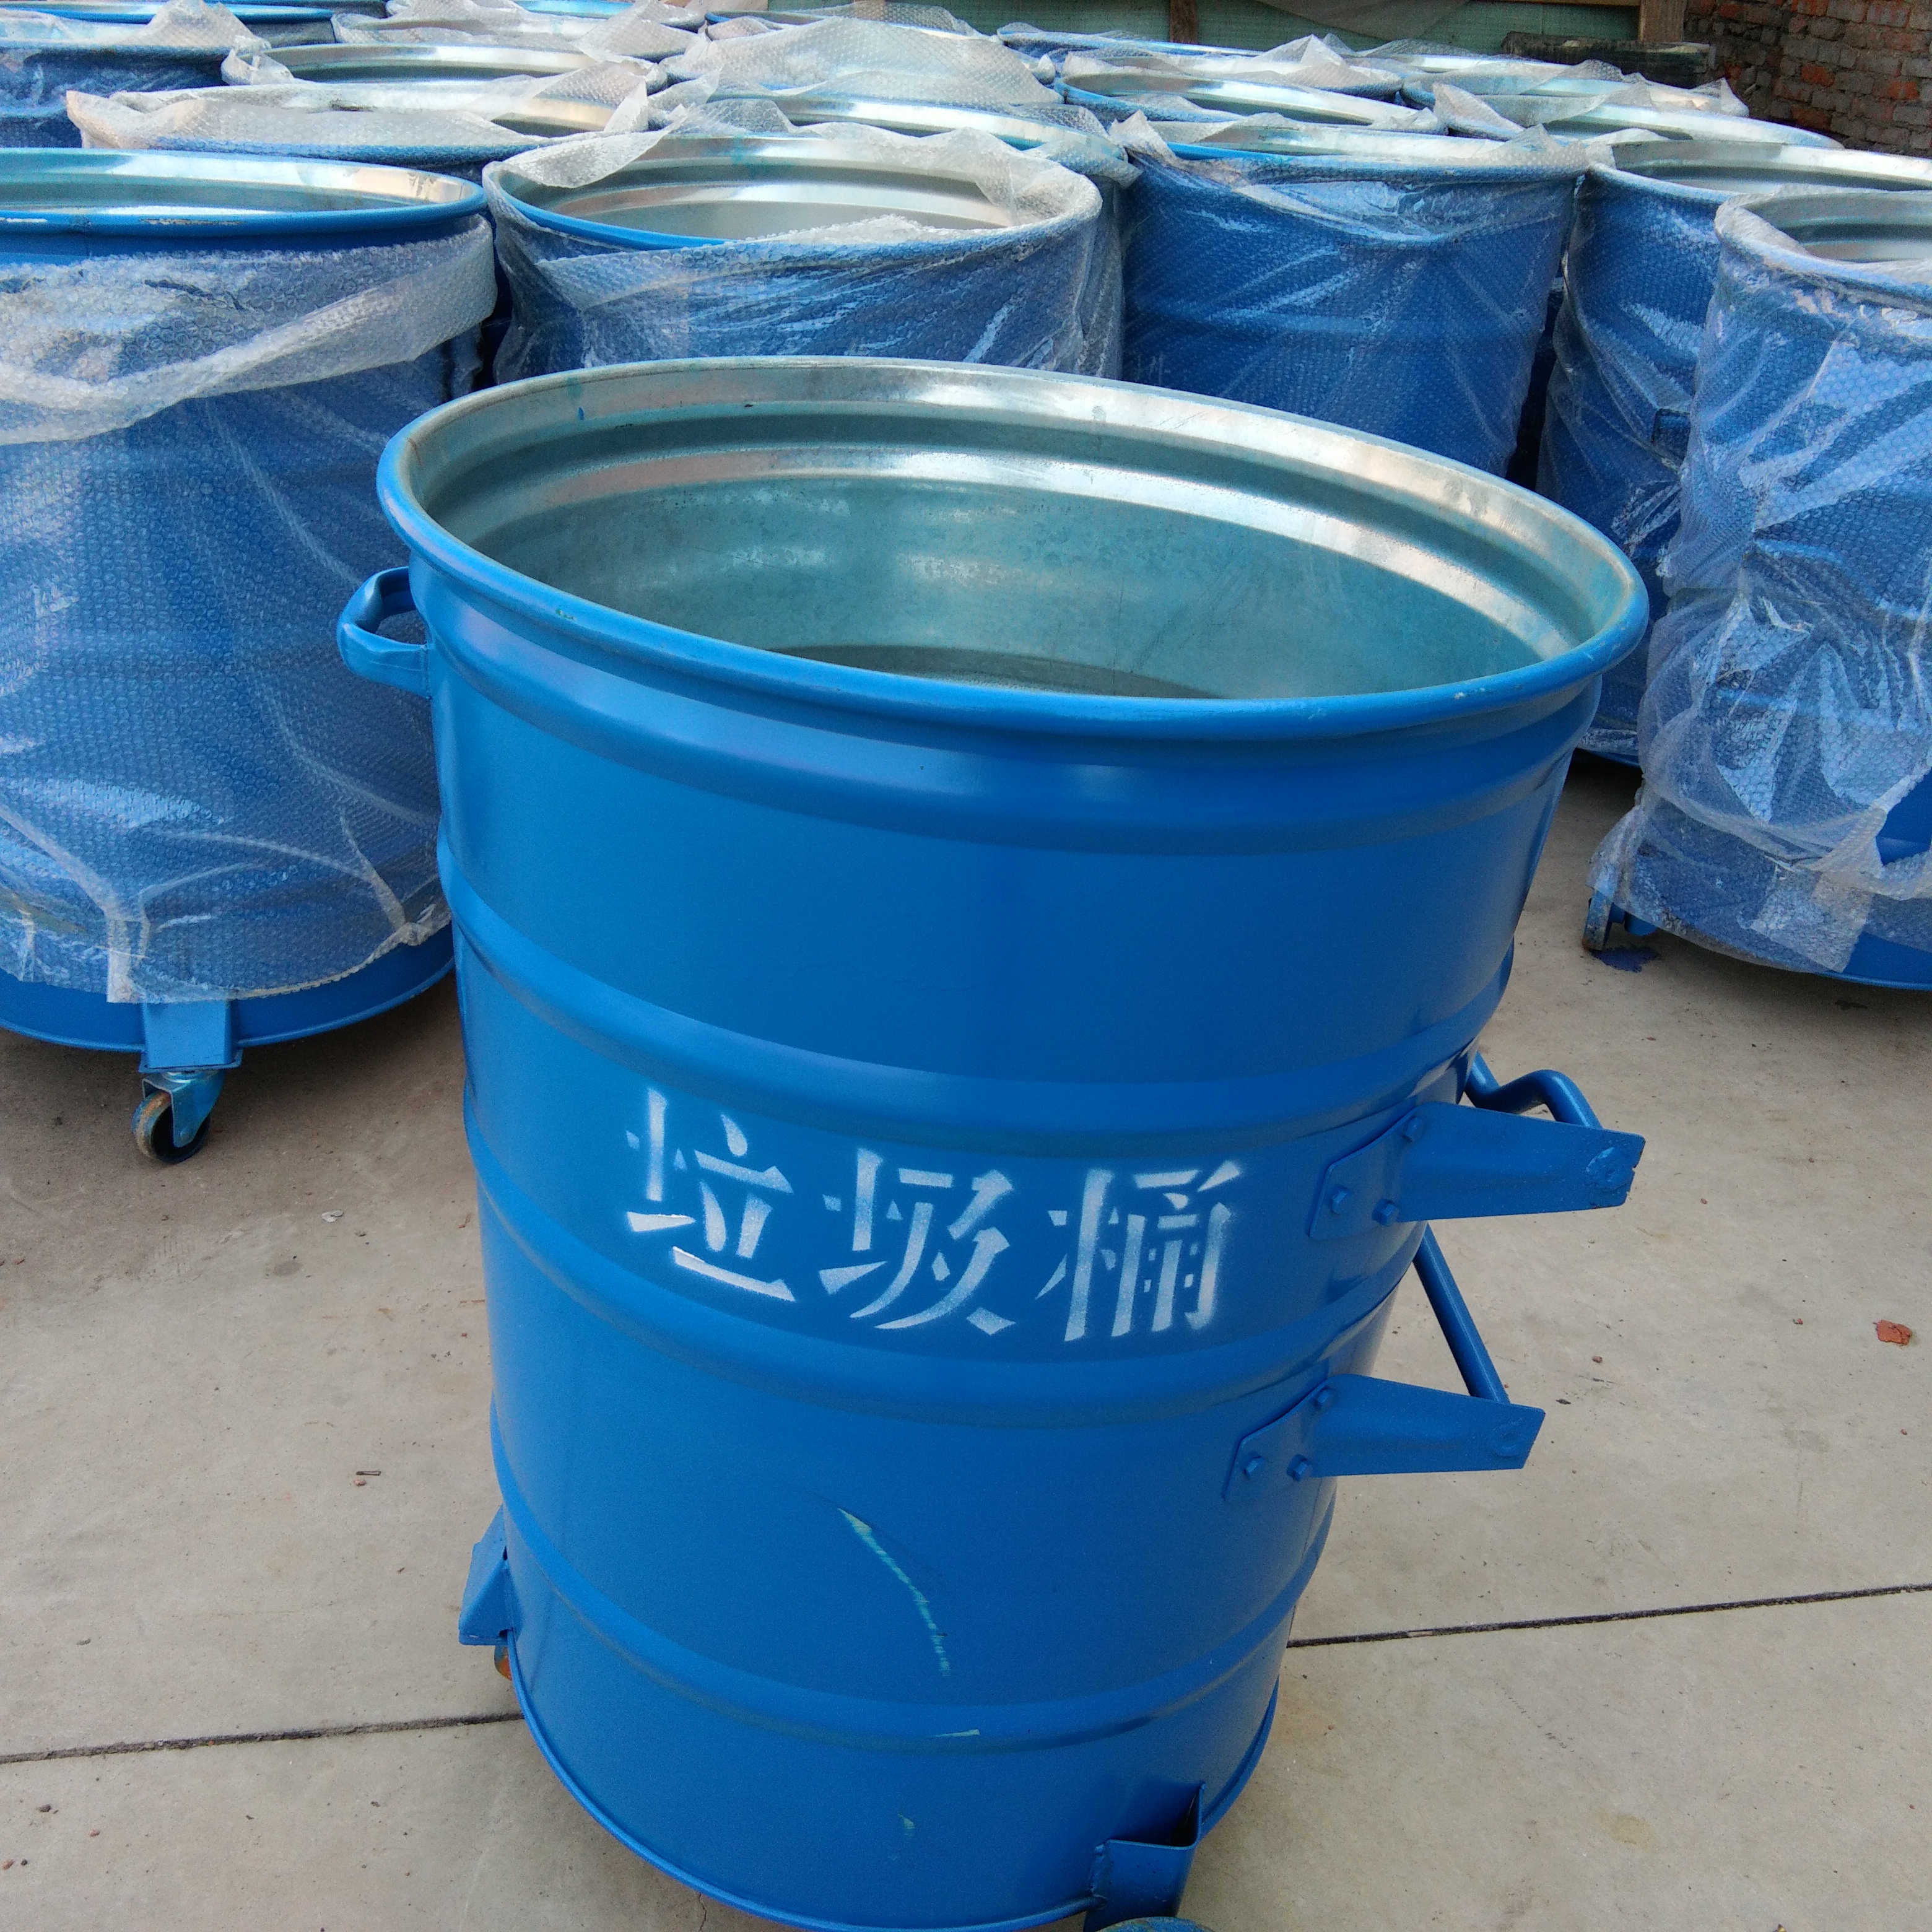 铁皮垃圾桶大容量圆形垃圾桶青蓝厂家直销蓝色红色铁制垃圾桶图片